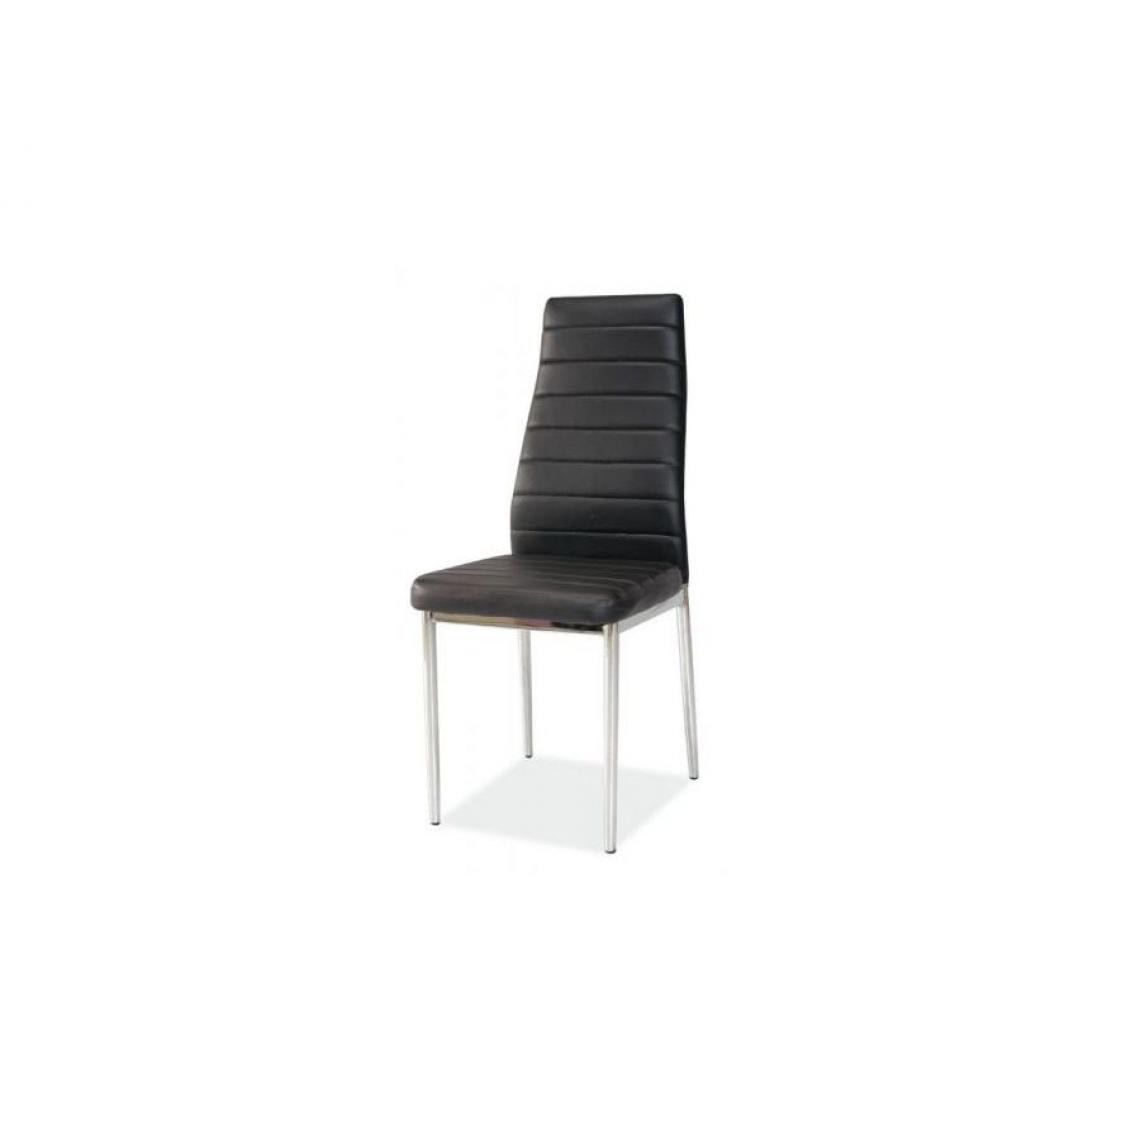 Hucoco - JOSSAN | Chaise élégante salle à manger salon bureau | Dimensions : 96x40x38 cm | Rembourrage en cuir écologique | Style moderne - Noir - Chaises